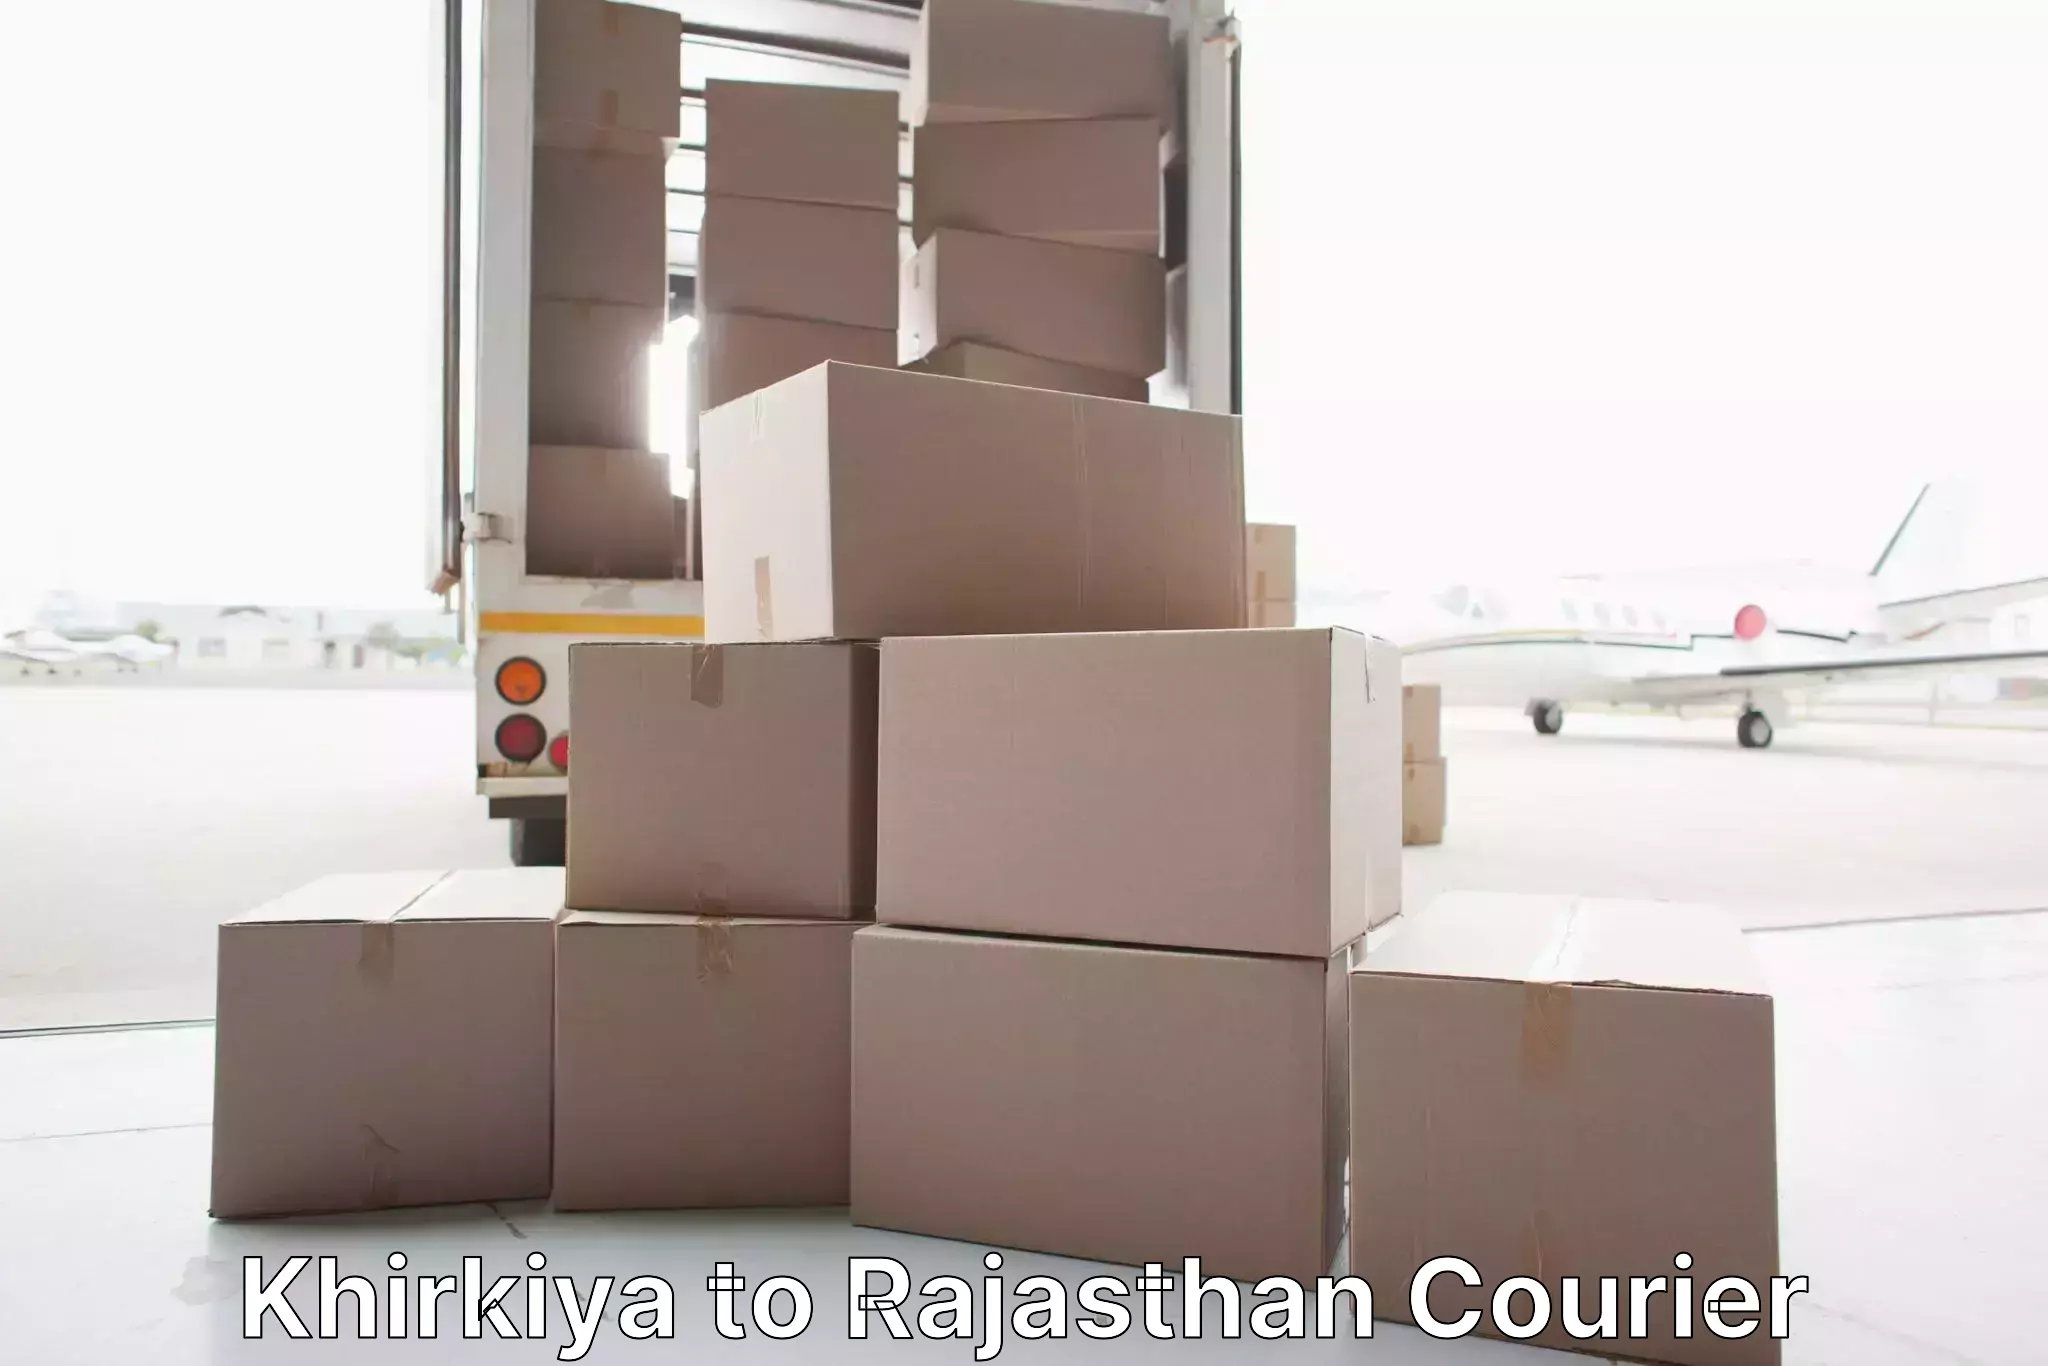 Furniture moving specialists Khirkiya to Srimadhopur